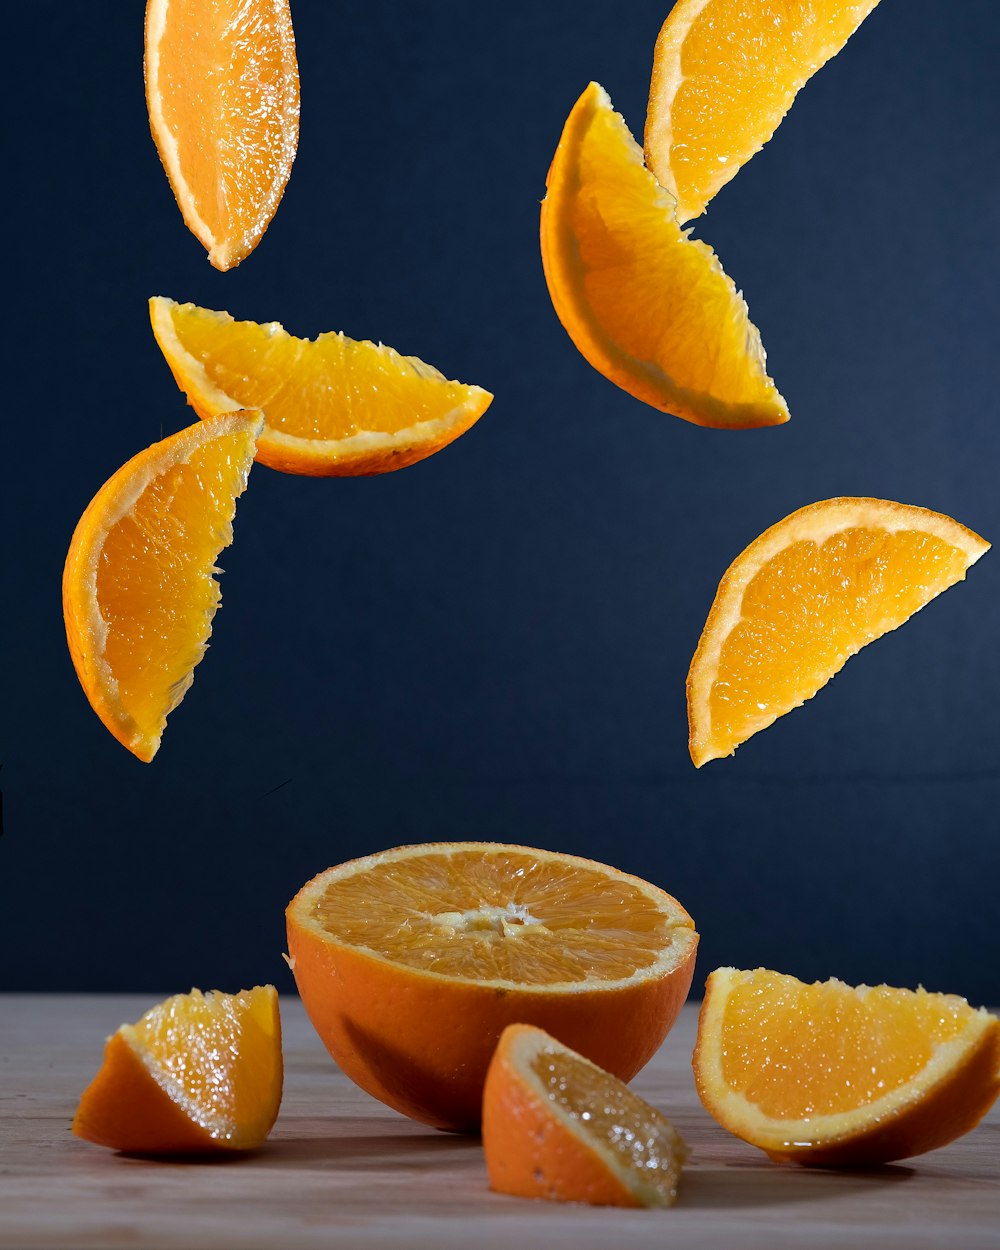 검은 표면에 얇게 썬 오렌지 과일